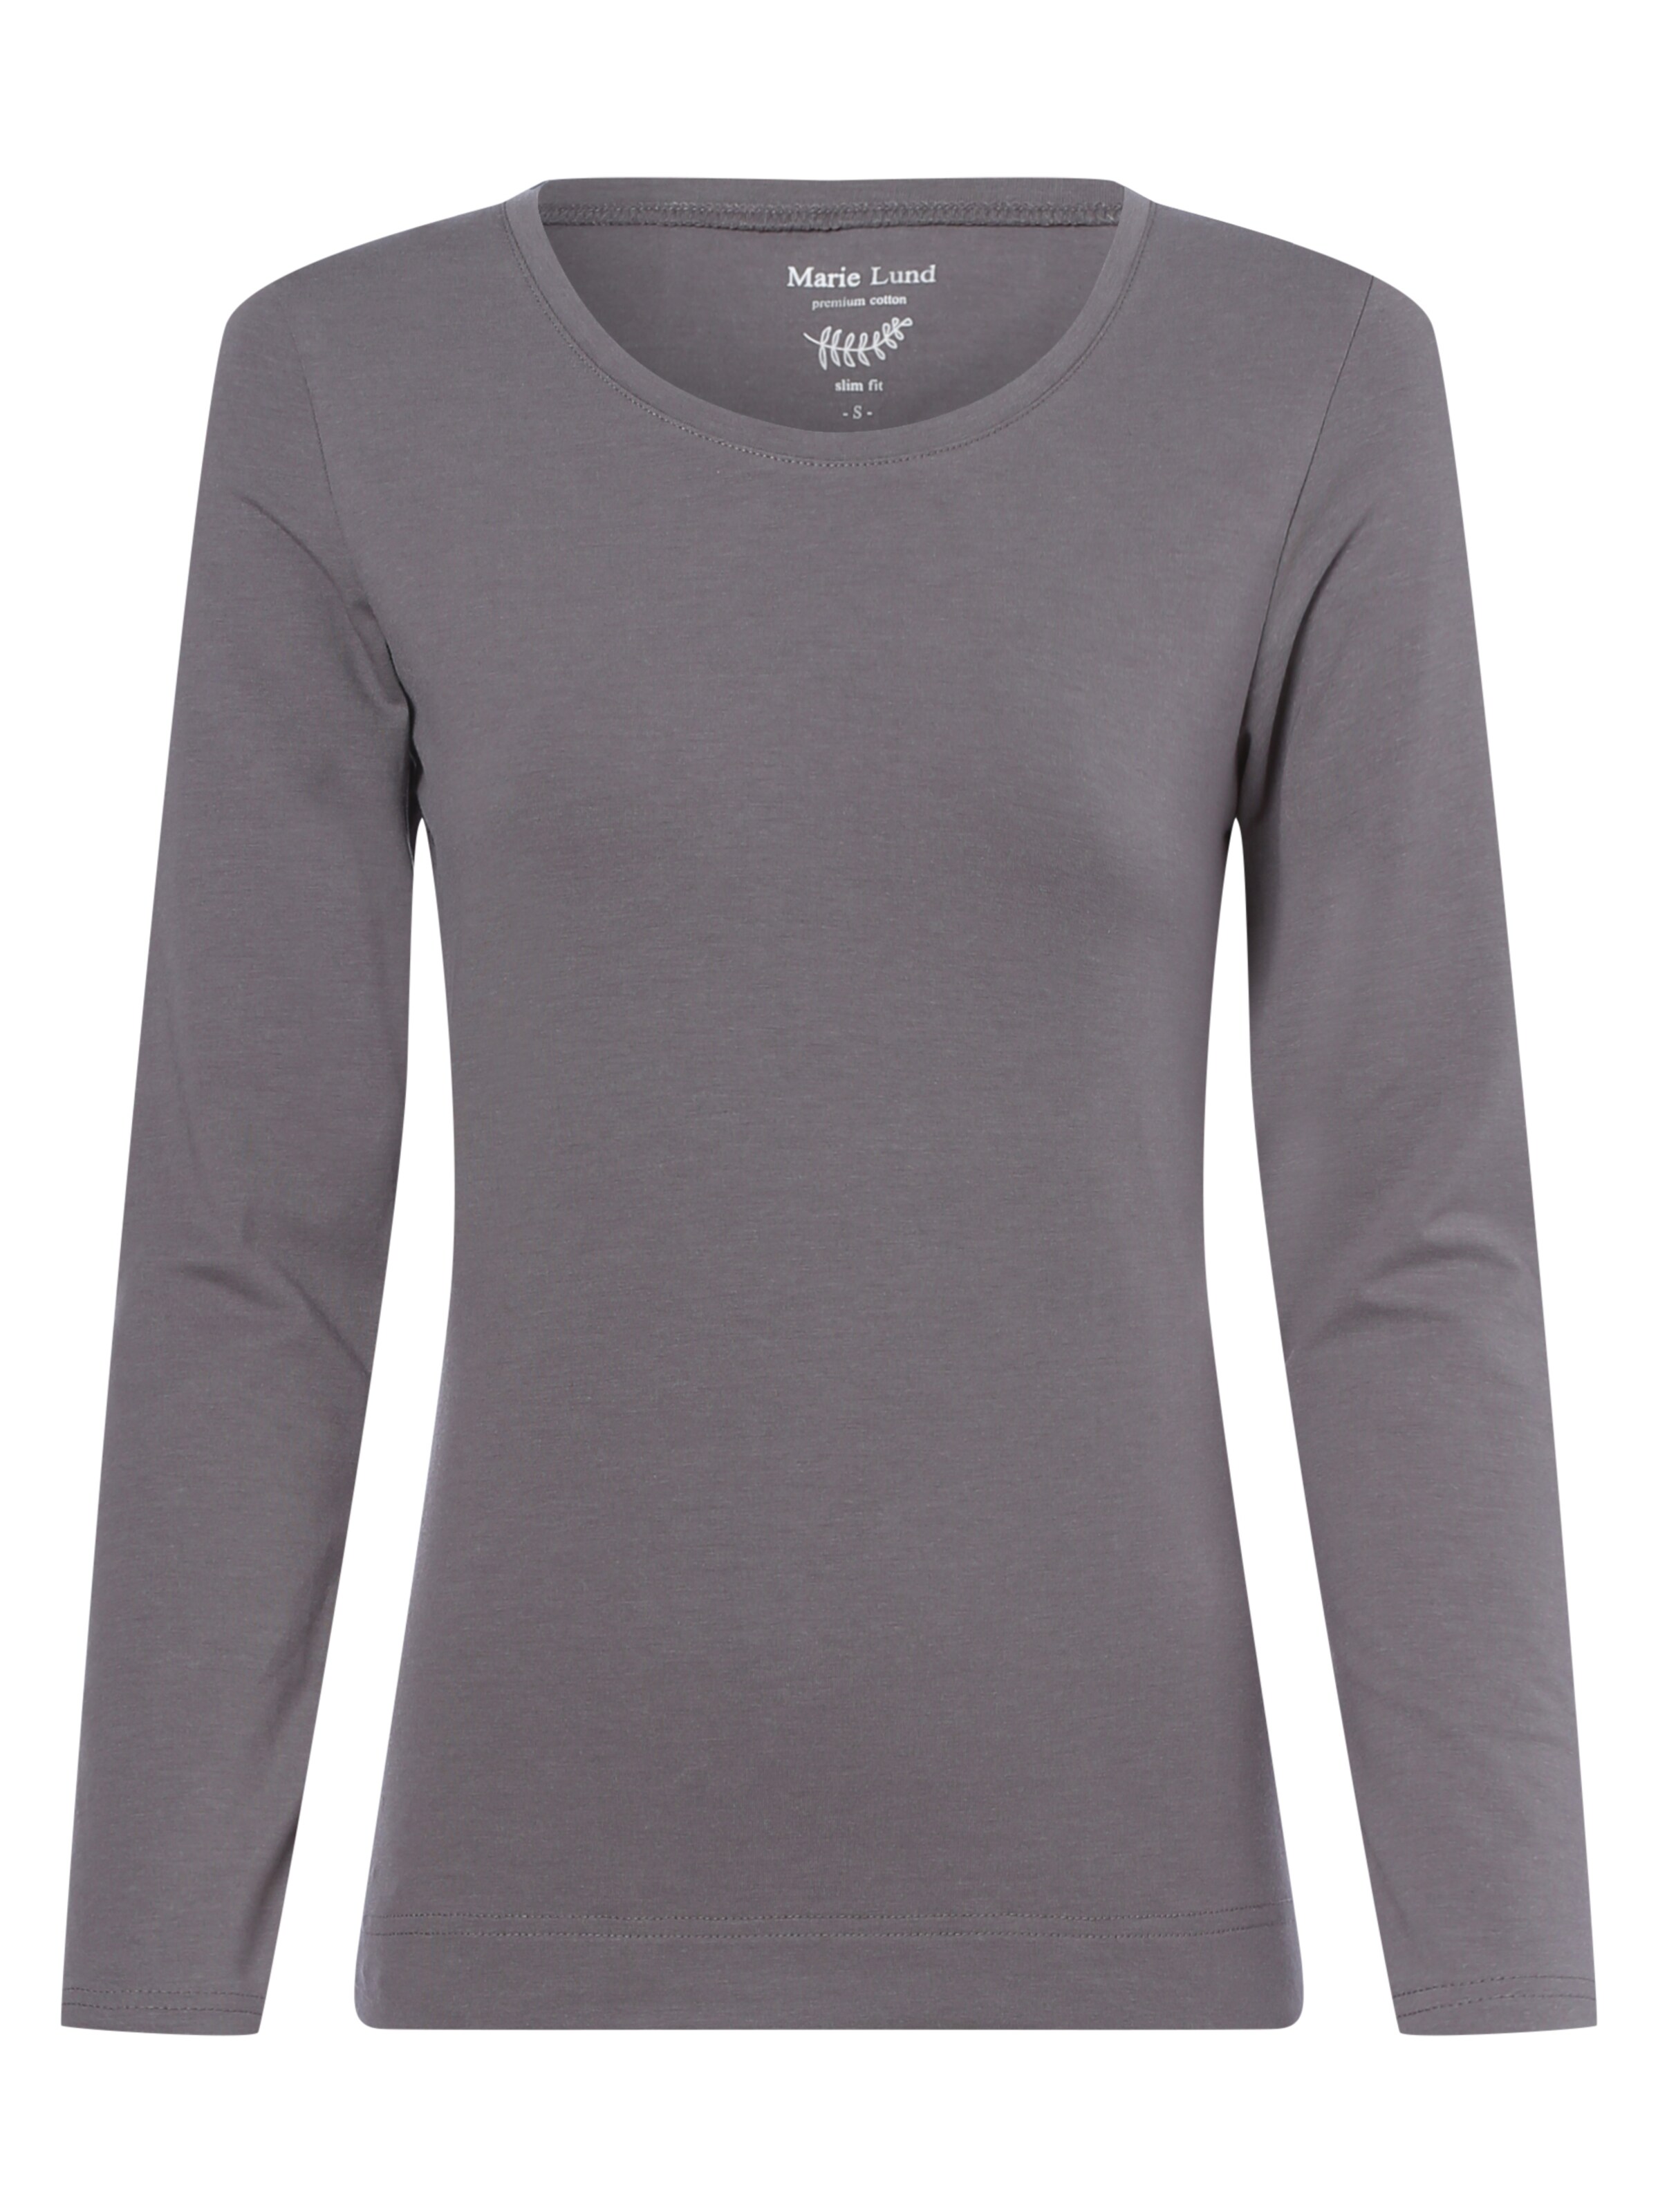 Frauen Shirts & Tops Marie Lund Shirt in Grau - SH29840